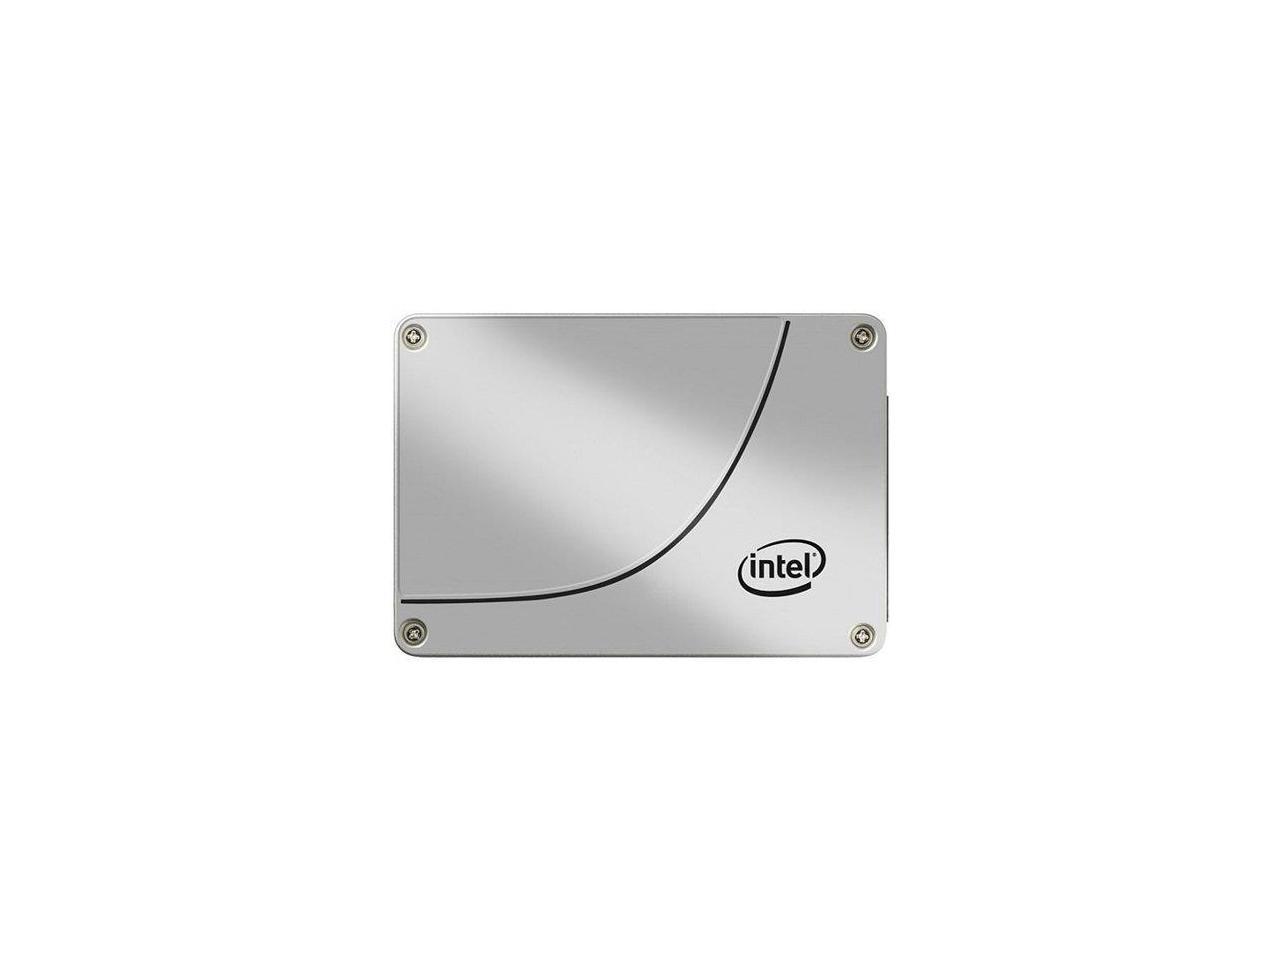 Intel DC S3610 SSDSC2BX480G401 2.5" 480GB SATA III MLC Business Solid State Drive